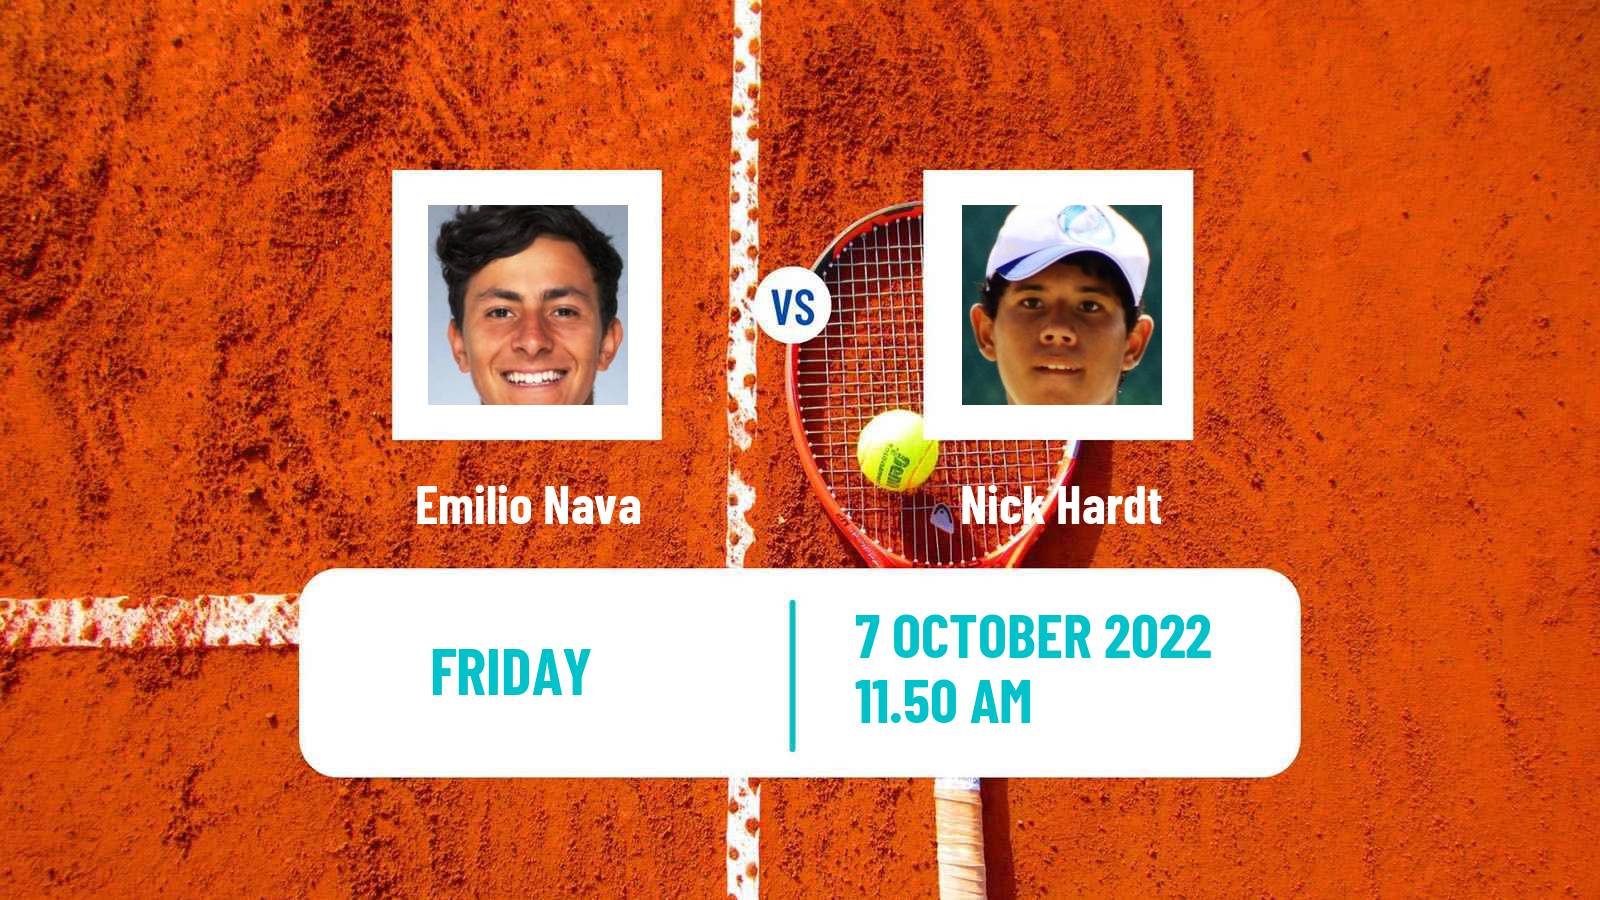 Tennis ATP Challenger Emilio Nava - Nick Hardt